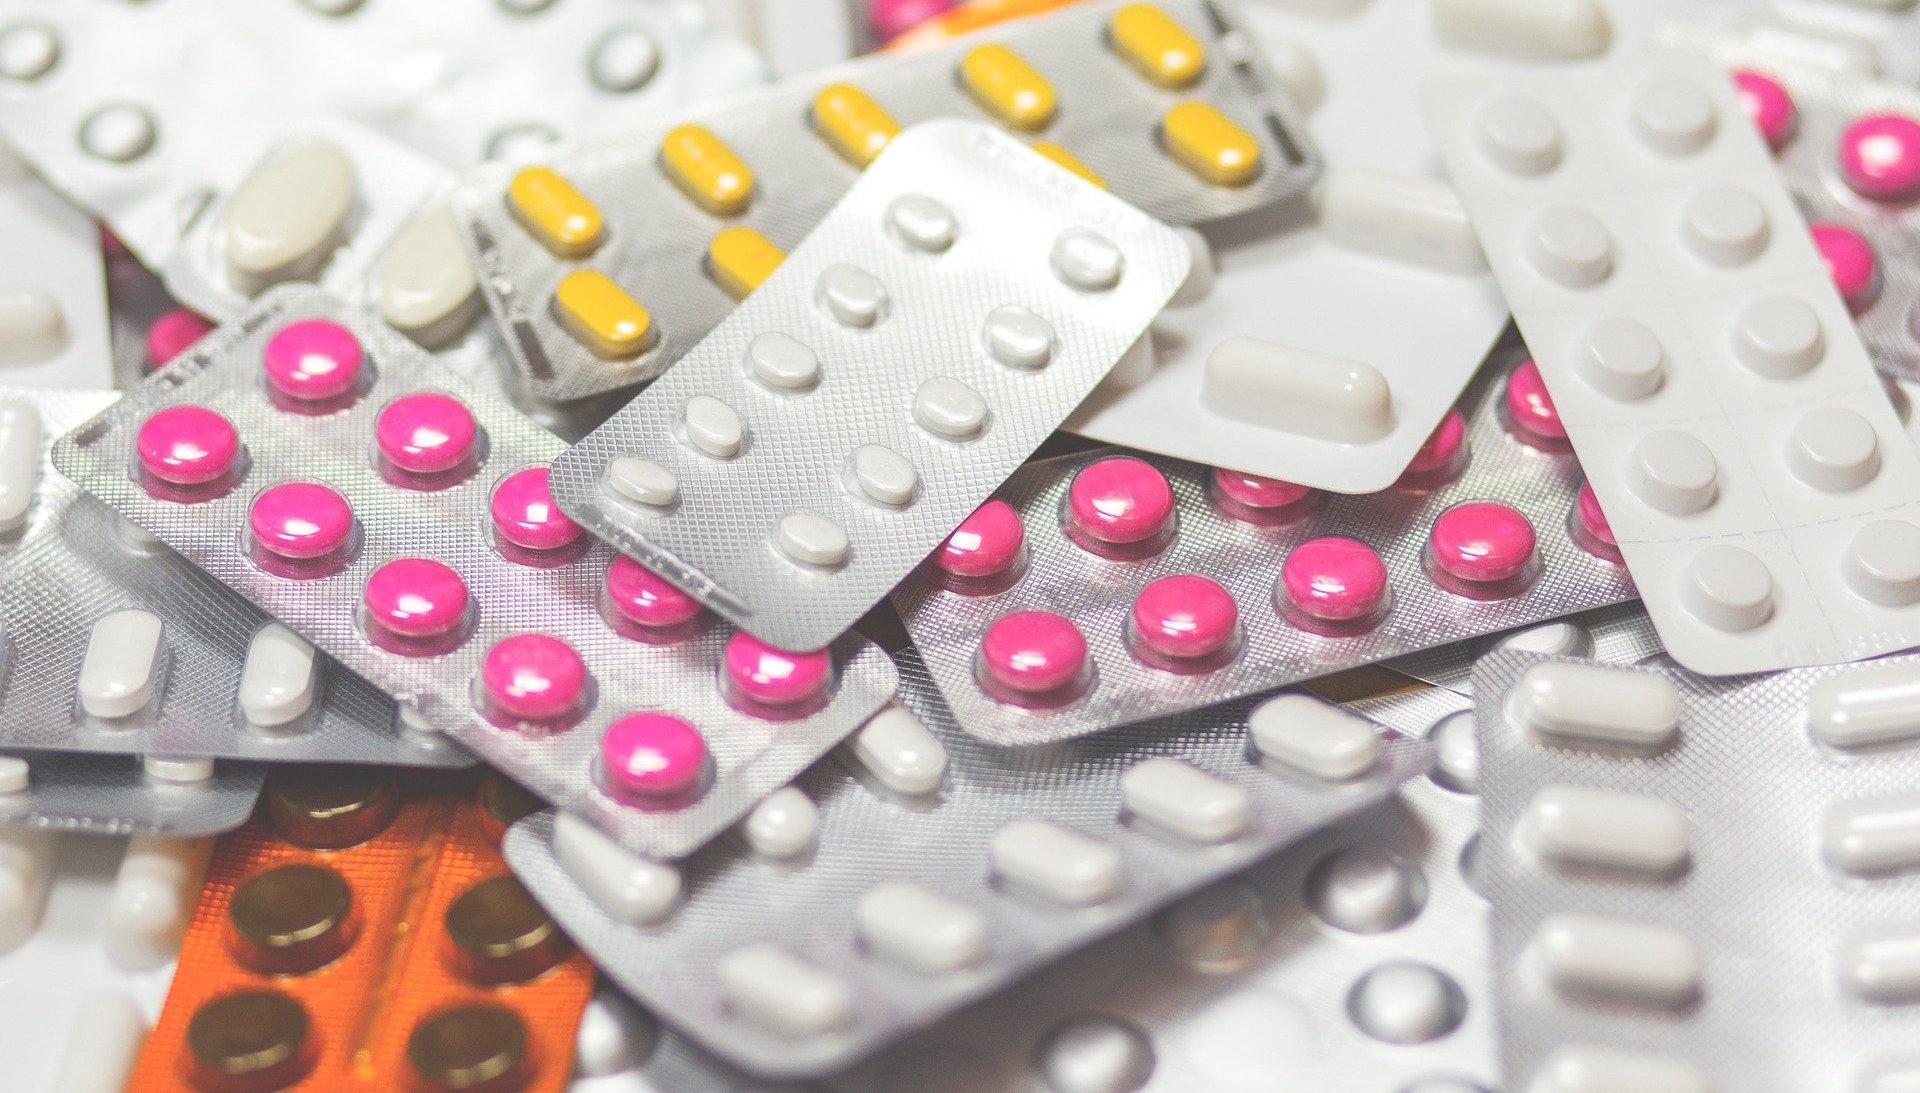 UNOPS solo compró 50.8% de medicamentos y 55% del material de curación de la compra consolidada 2020